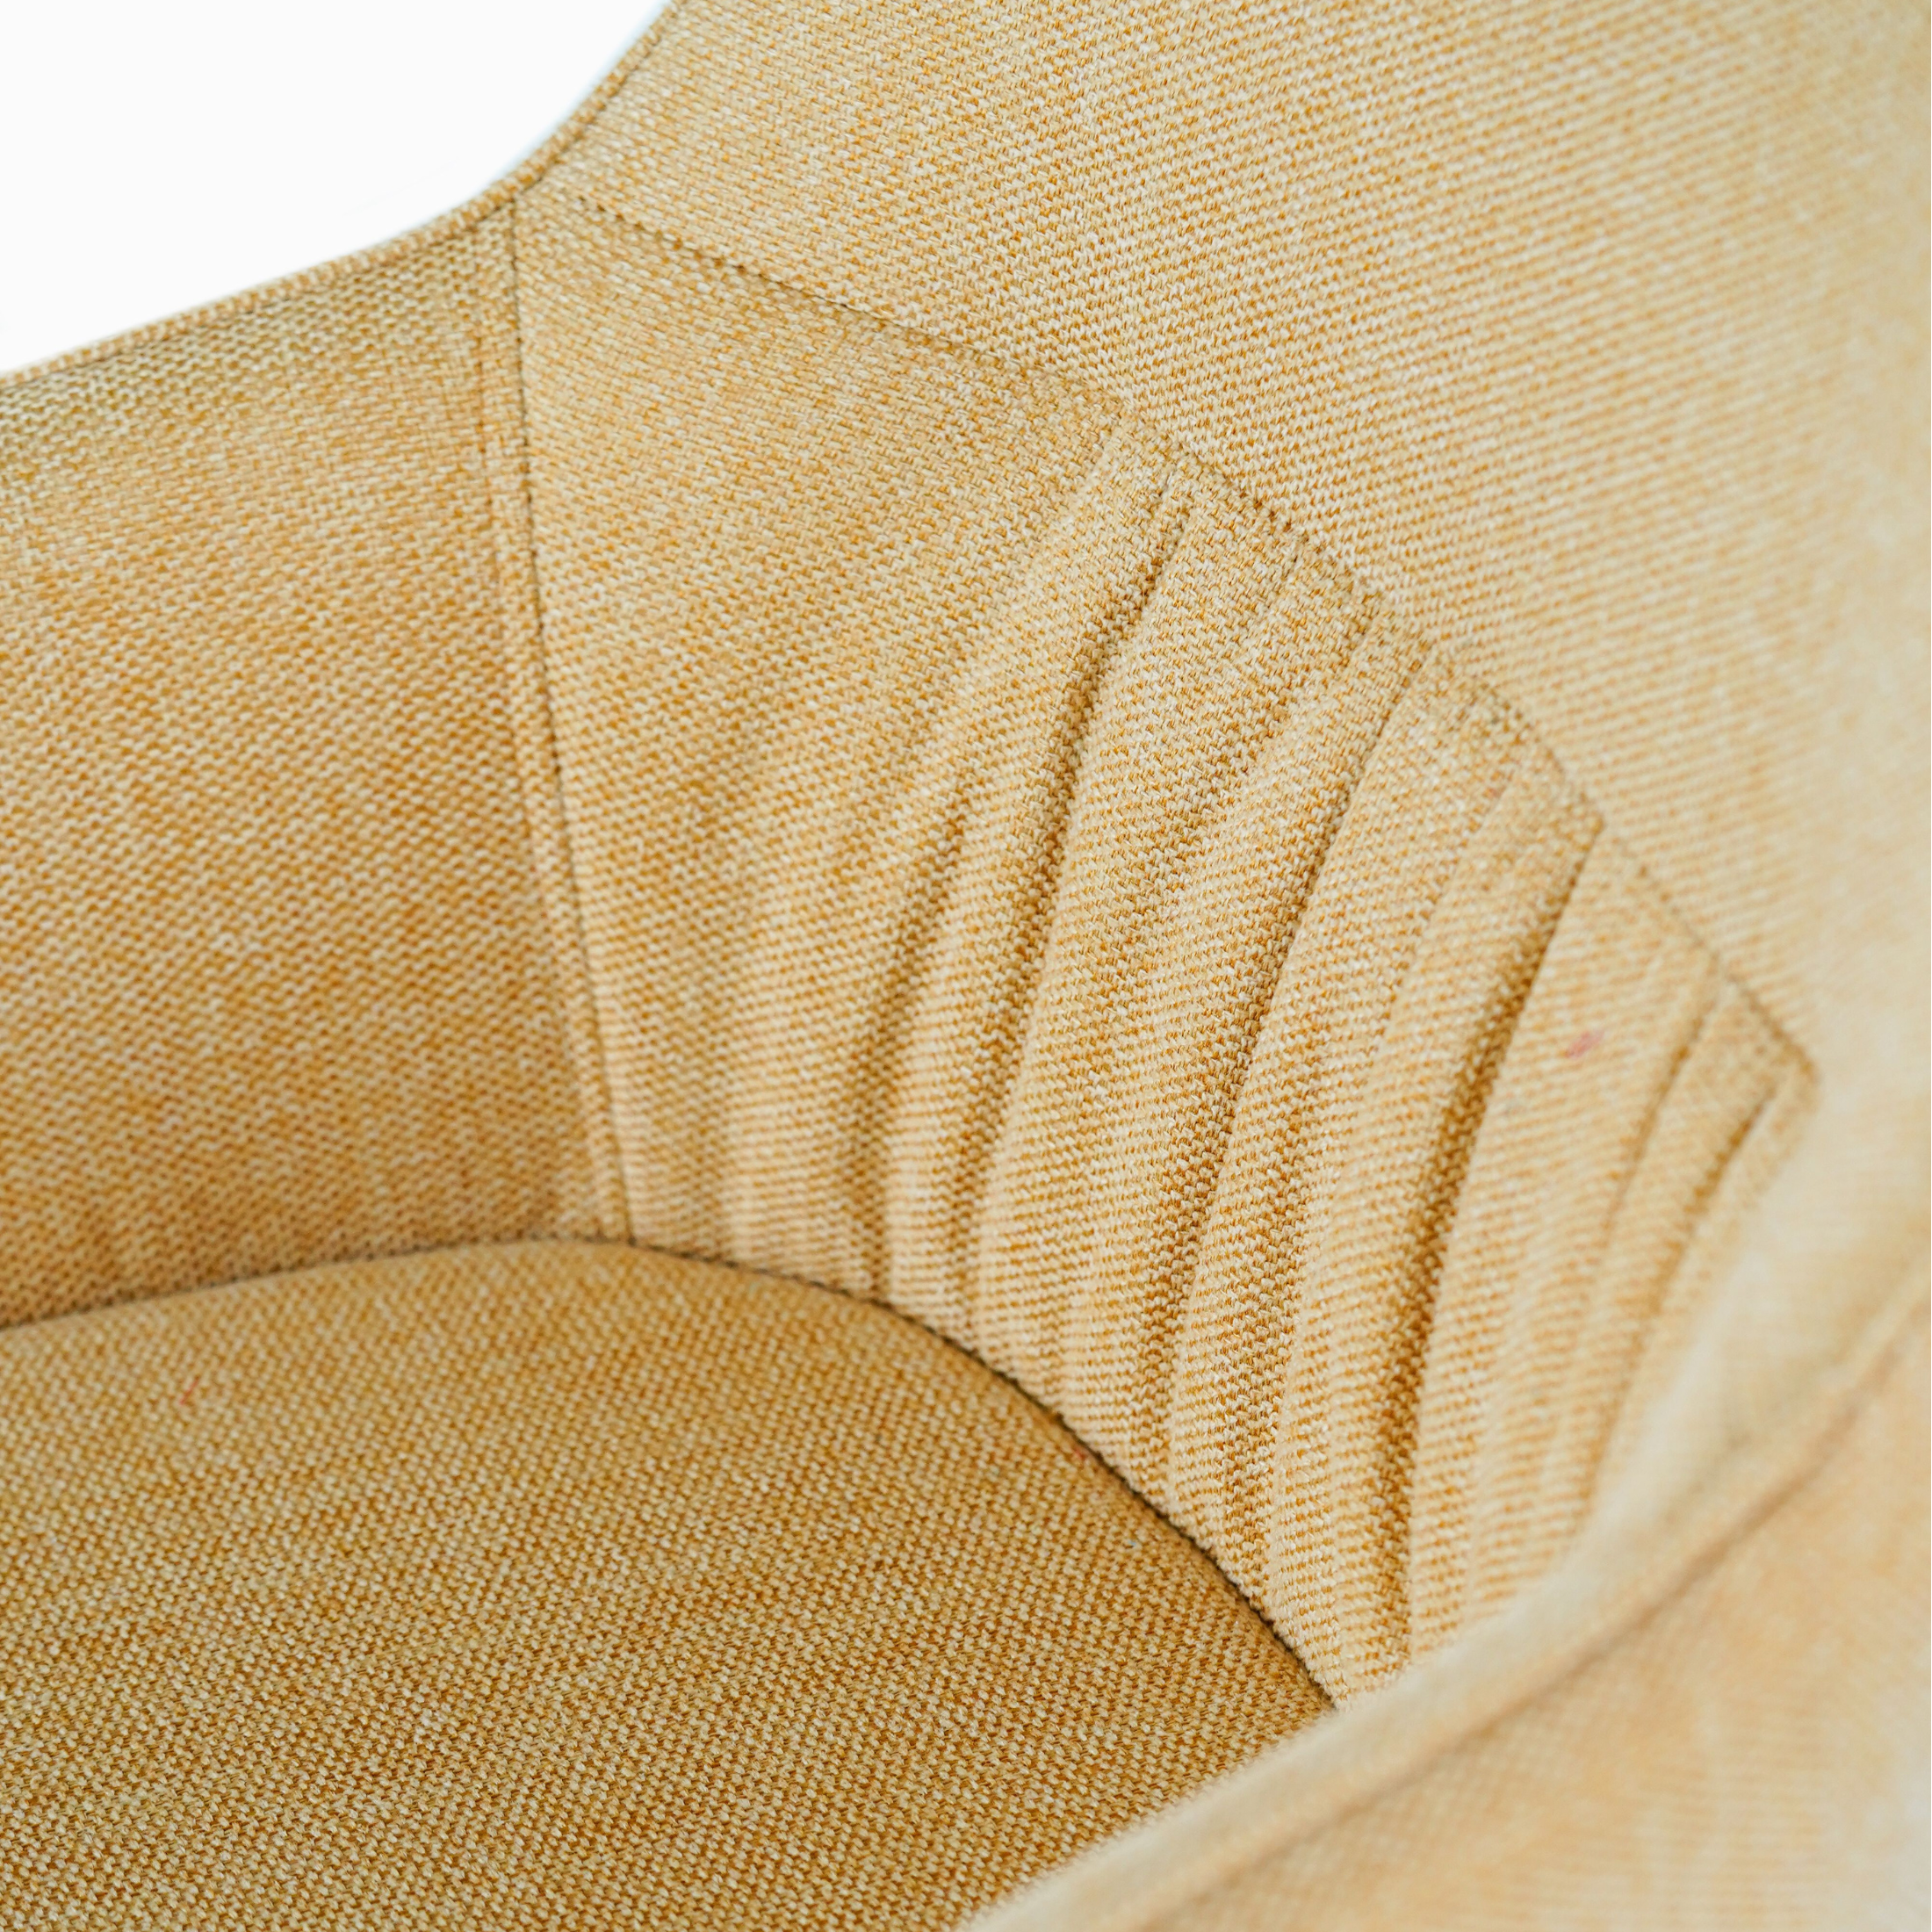 Chaise rembourrée "Gaia" fauteuil moderne en tissu 56x56 cm 87h